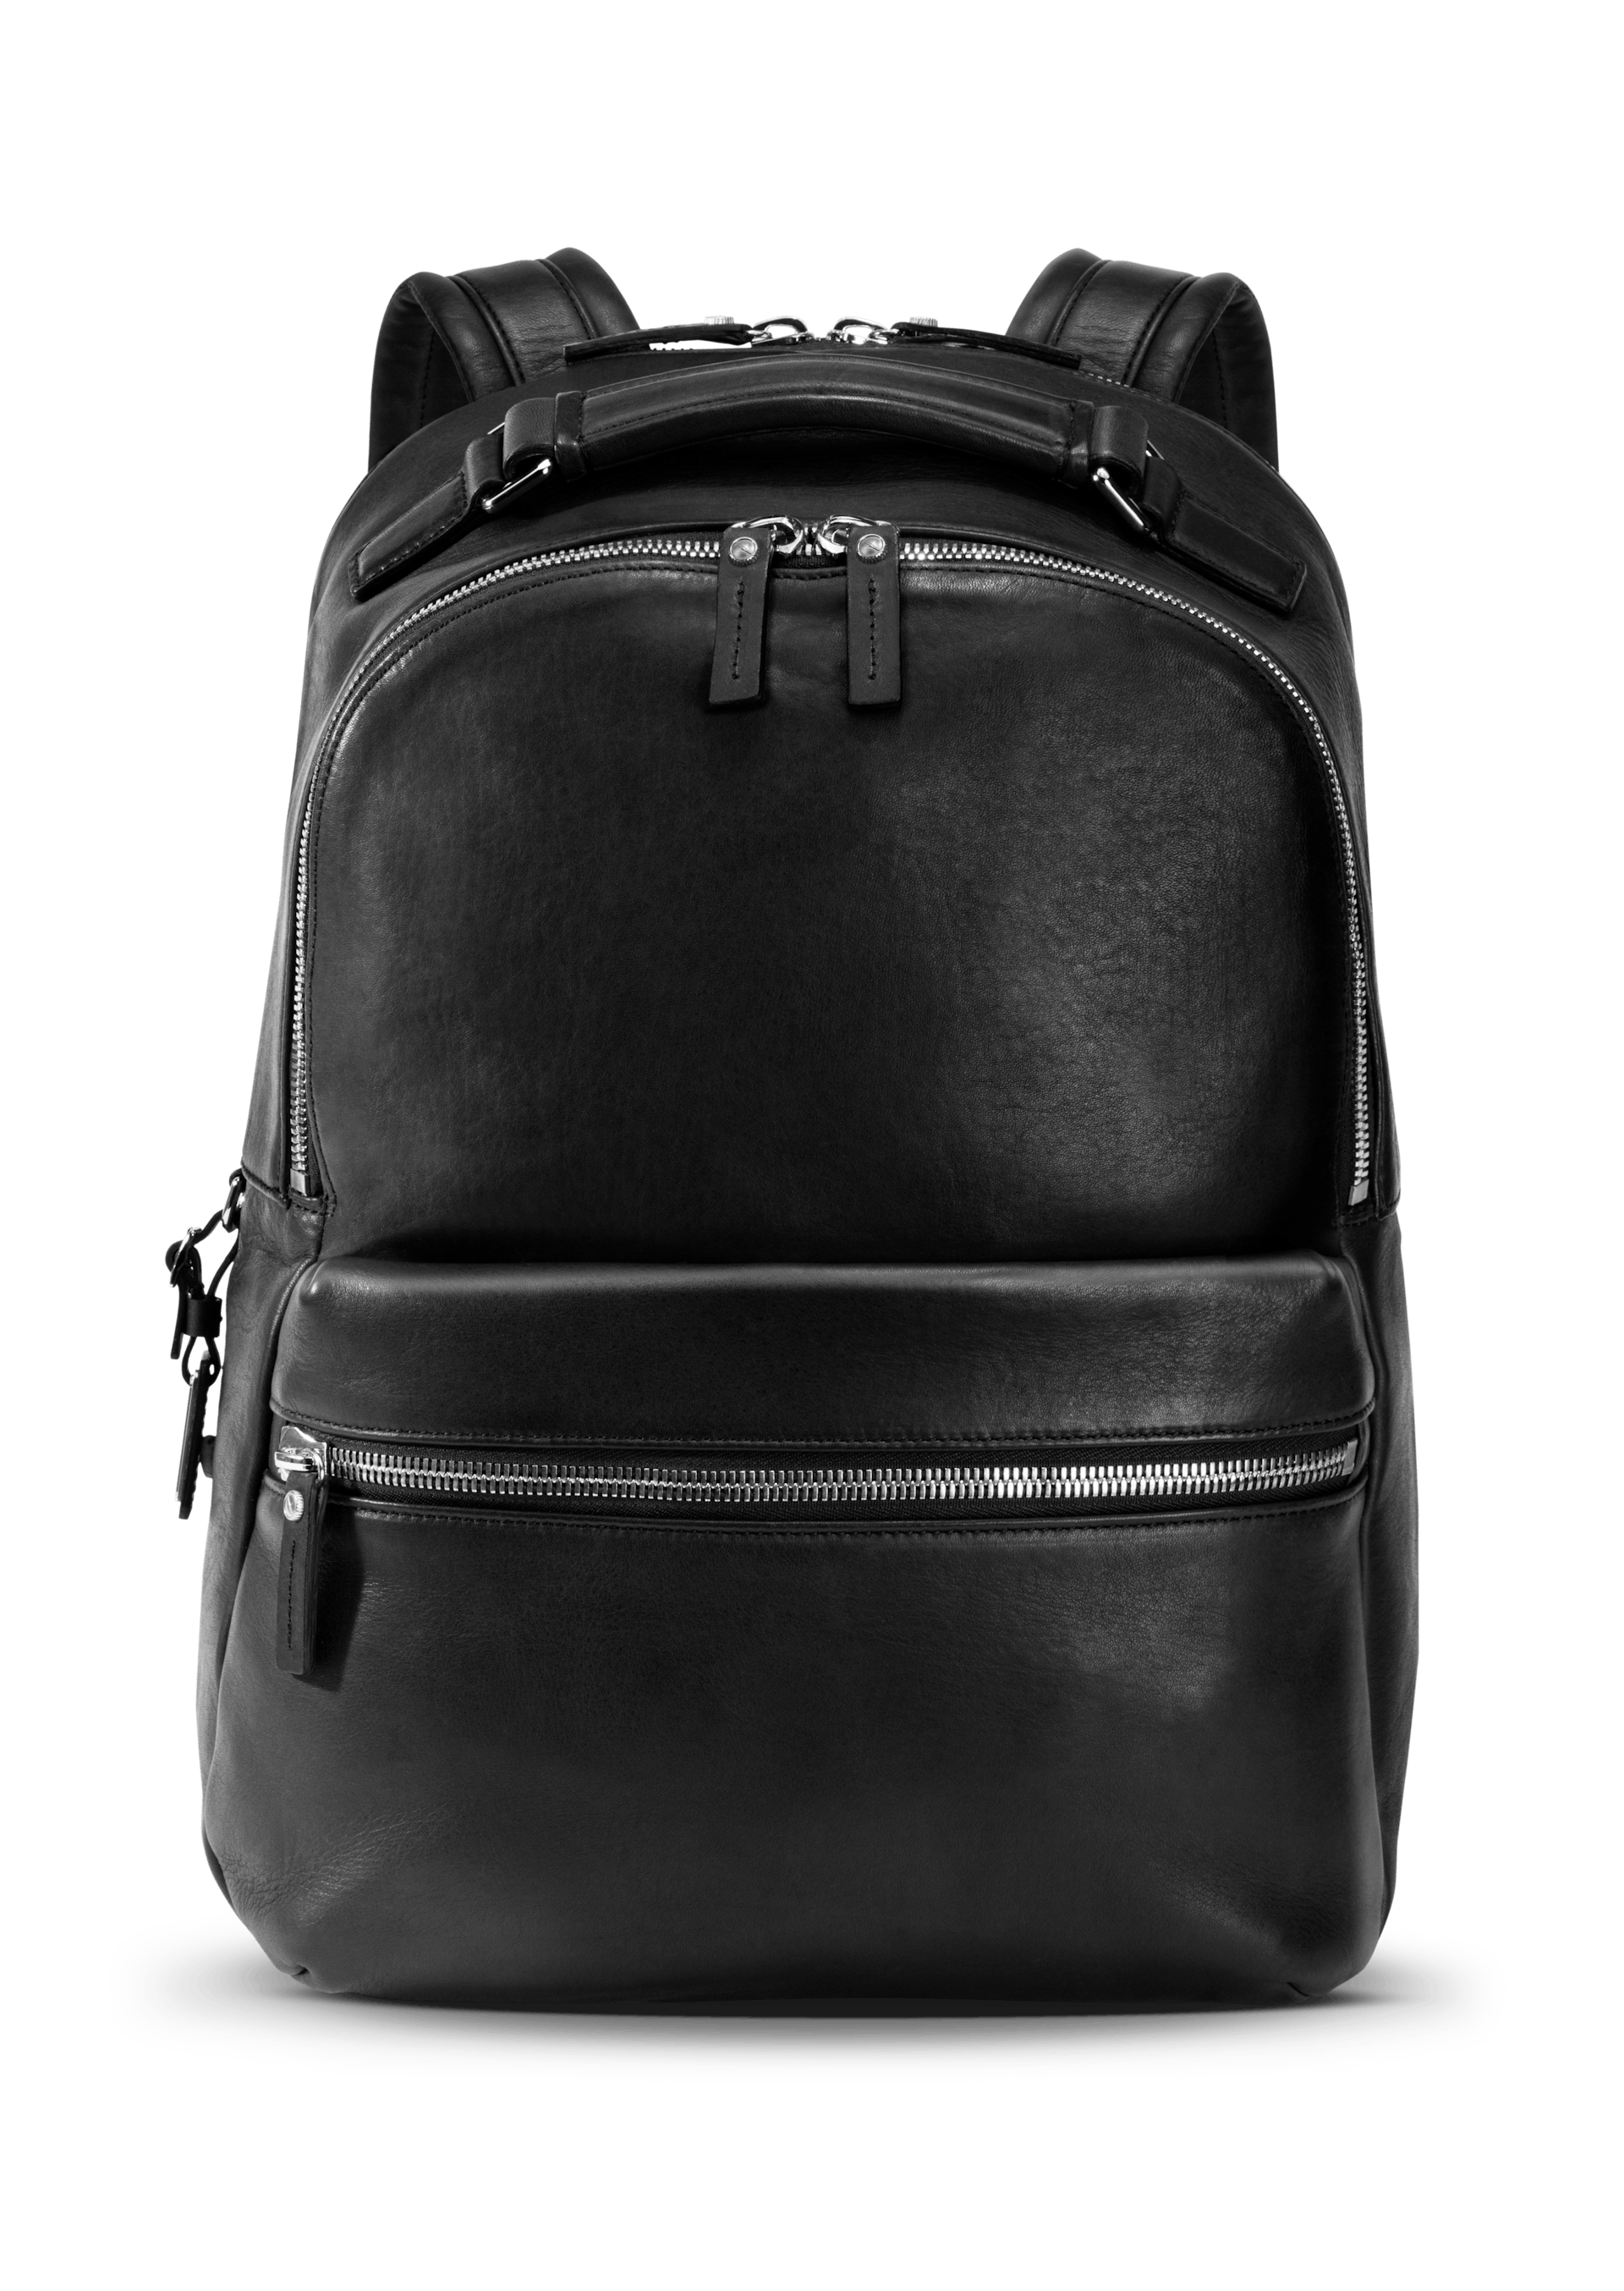 The Runwell Black Leather Backpack 